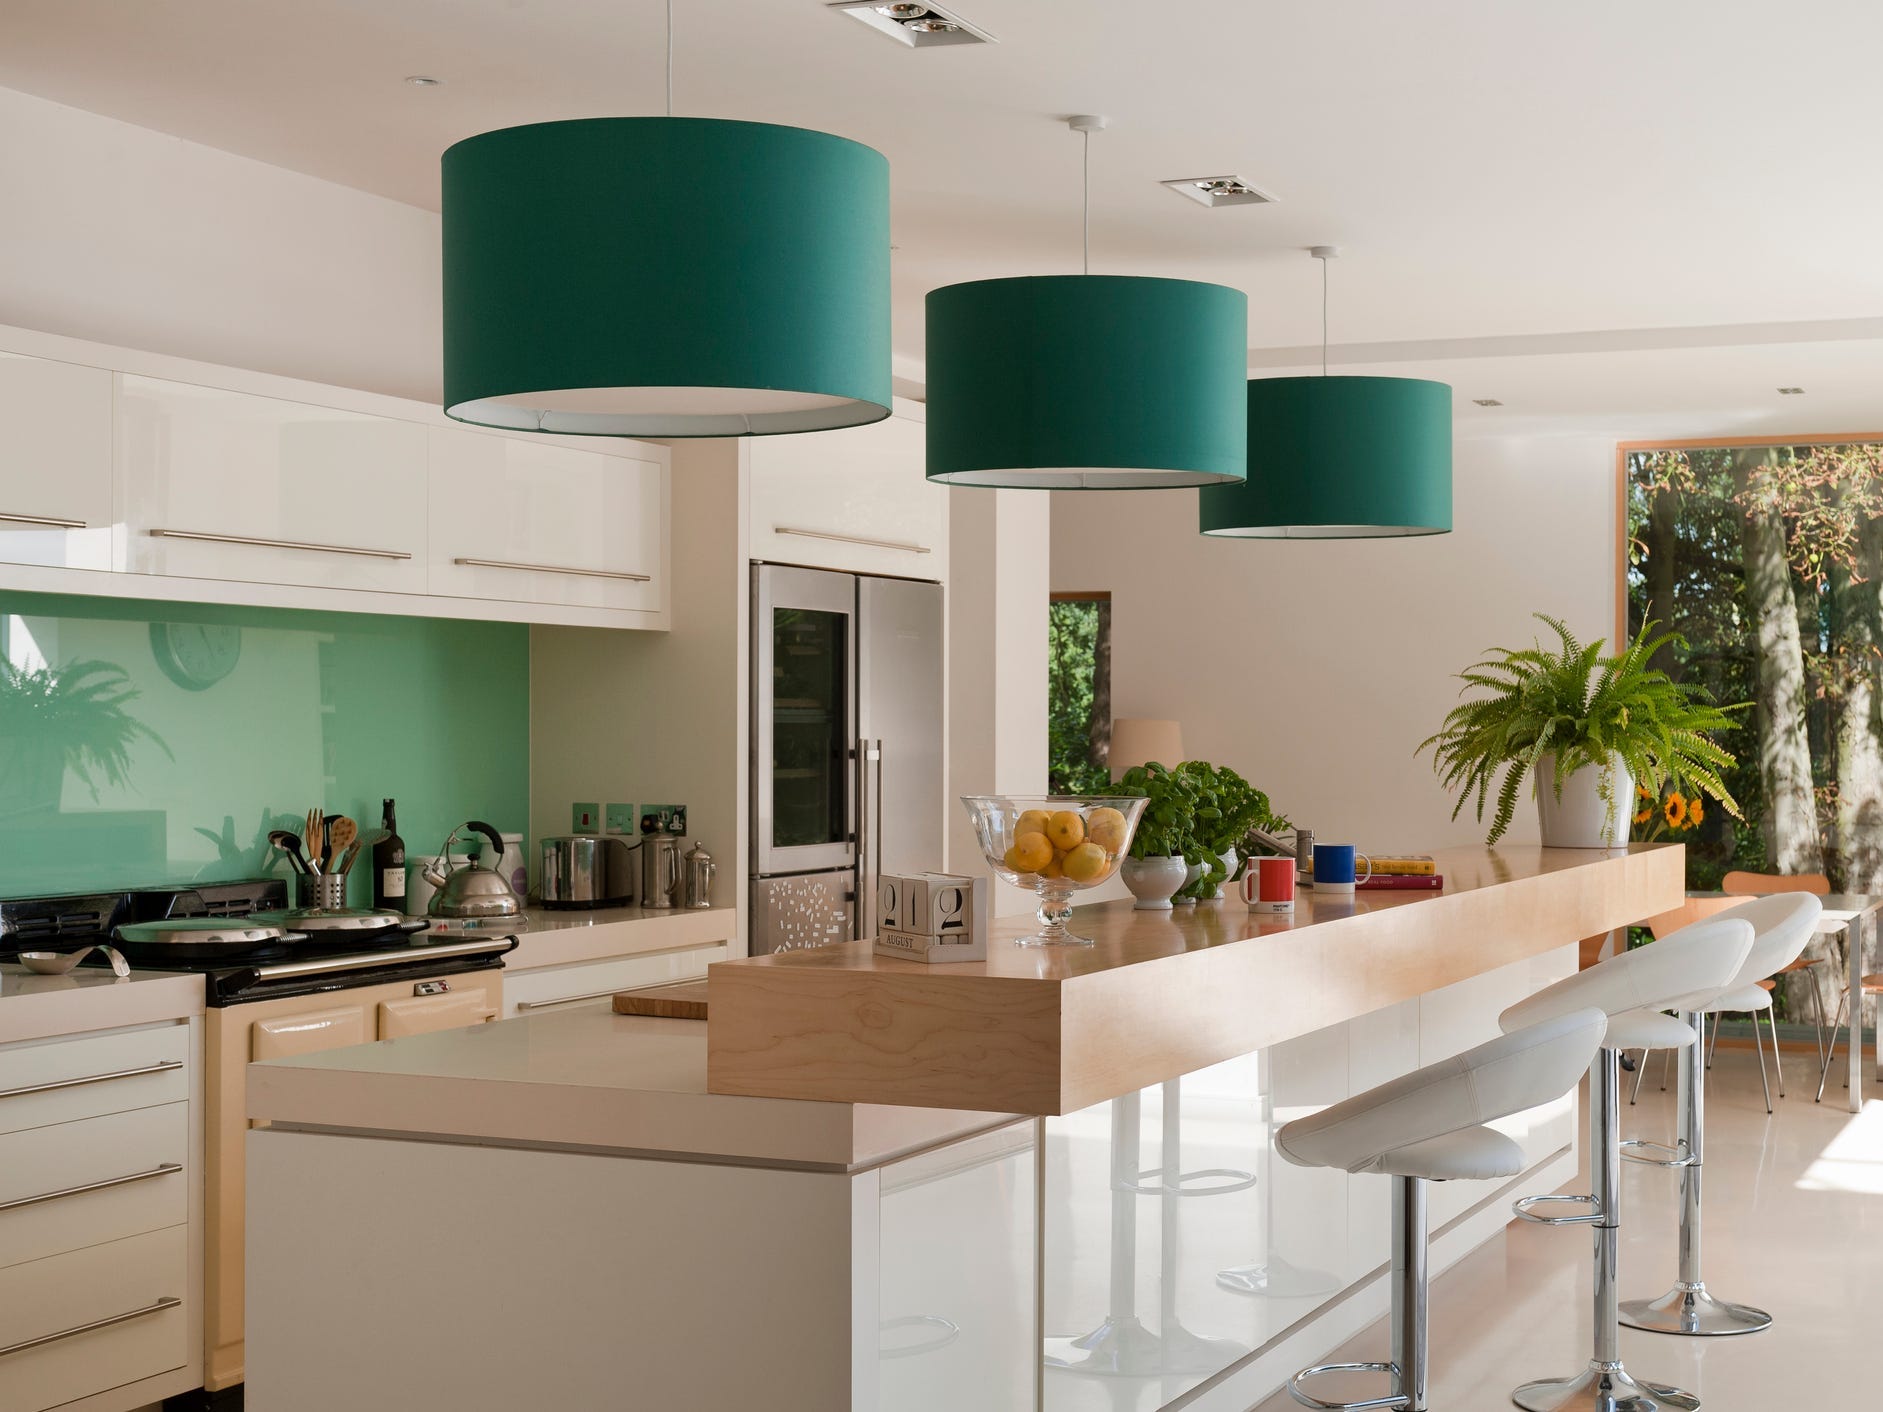 Moderne Küche mit grüner Rückwand und Lampenschirmen